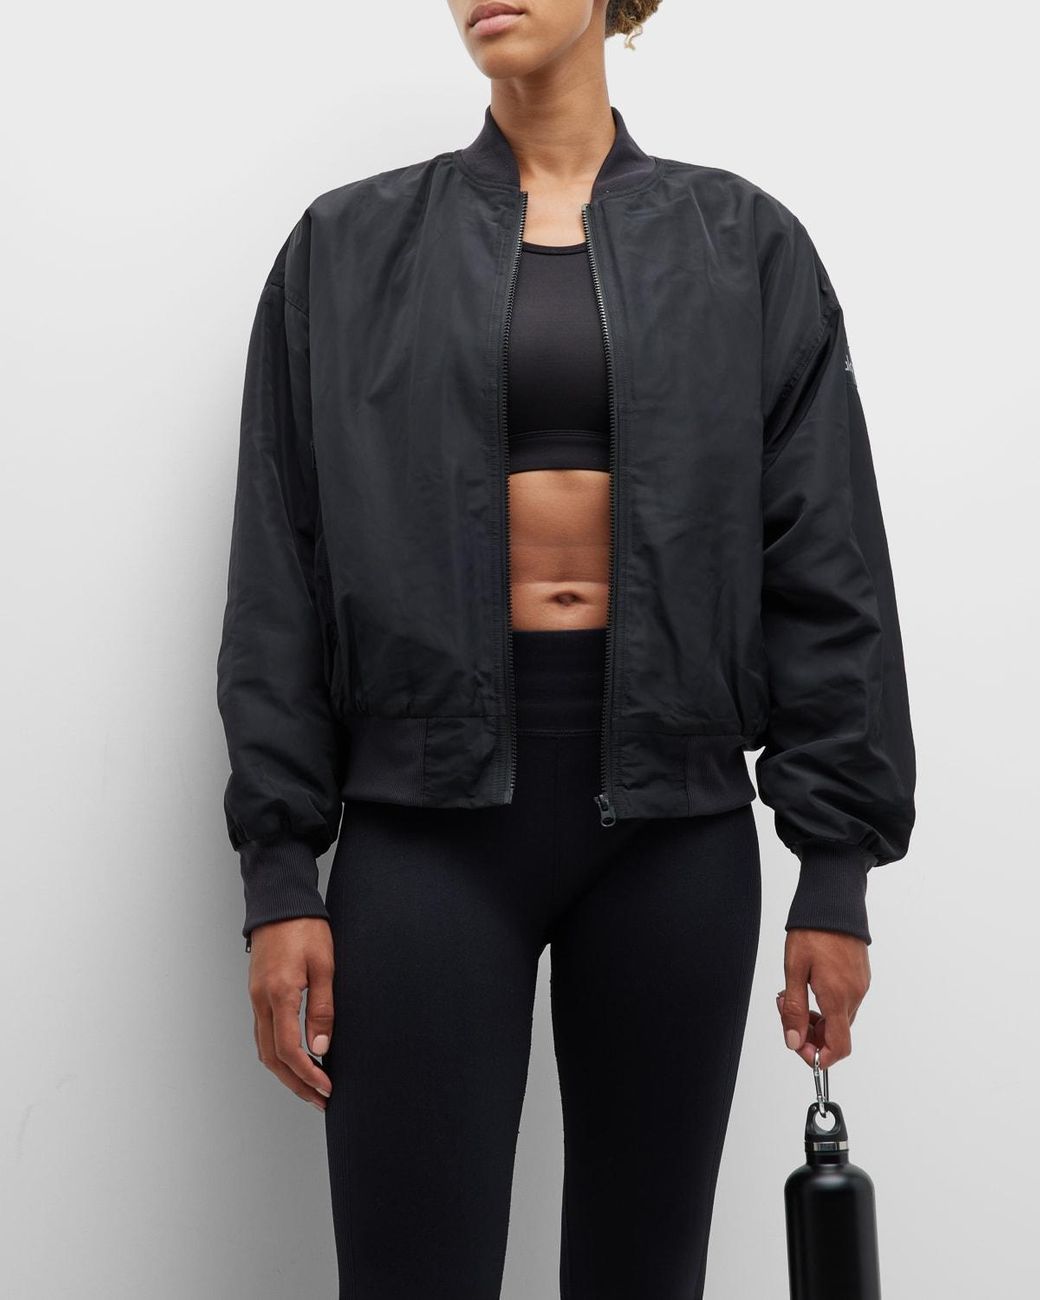 ALO Yoga, Jackets & Coats, Alo Yoga It Girl Oversized Bomber Jacket